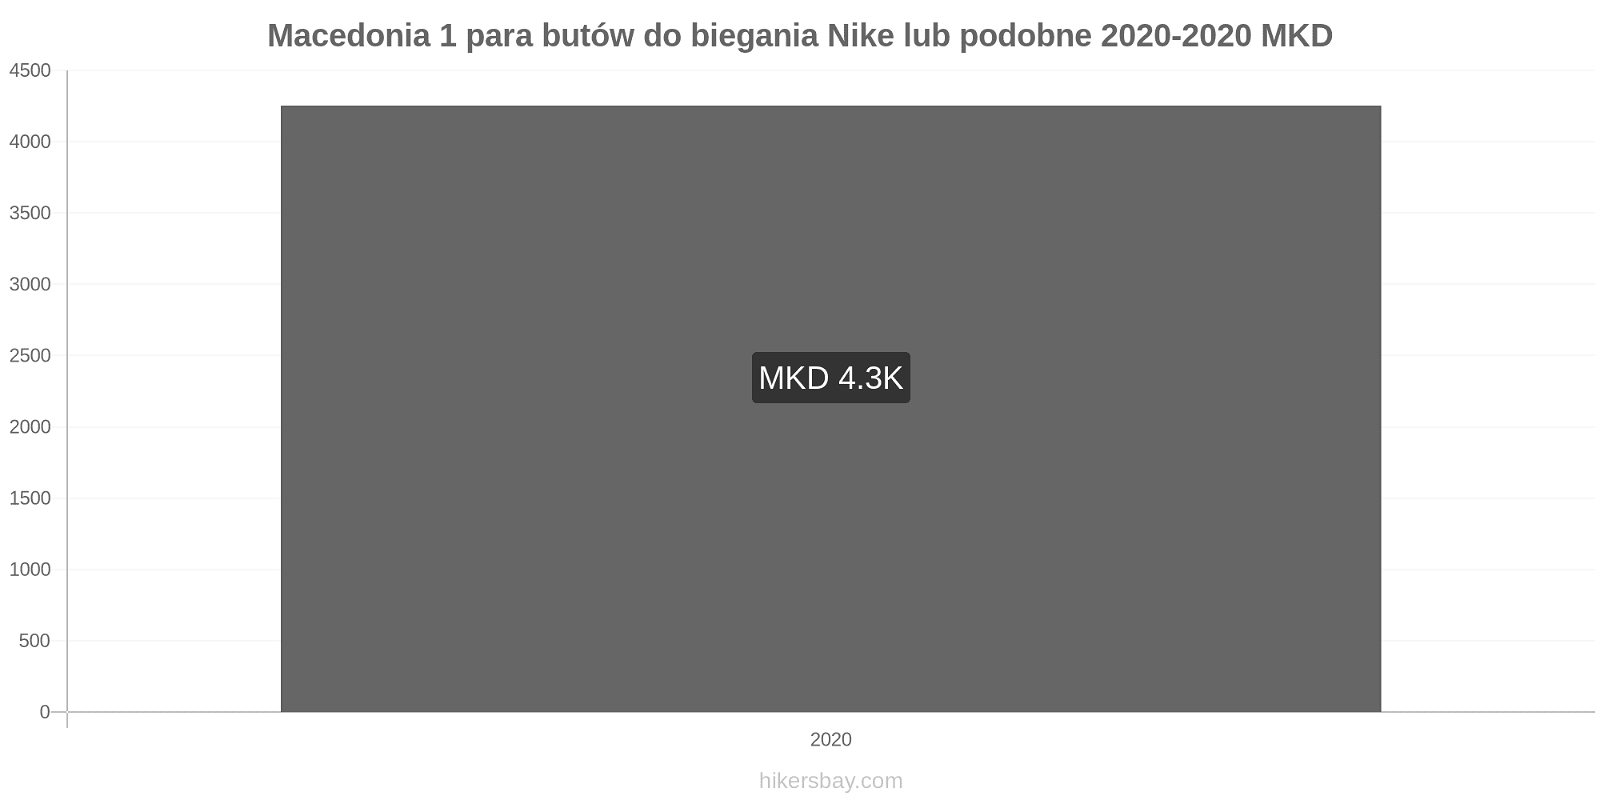 Macedonia zmiany cen 1 para butów do biegania Nike lub podobne hikersbay.com